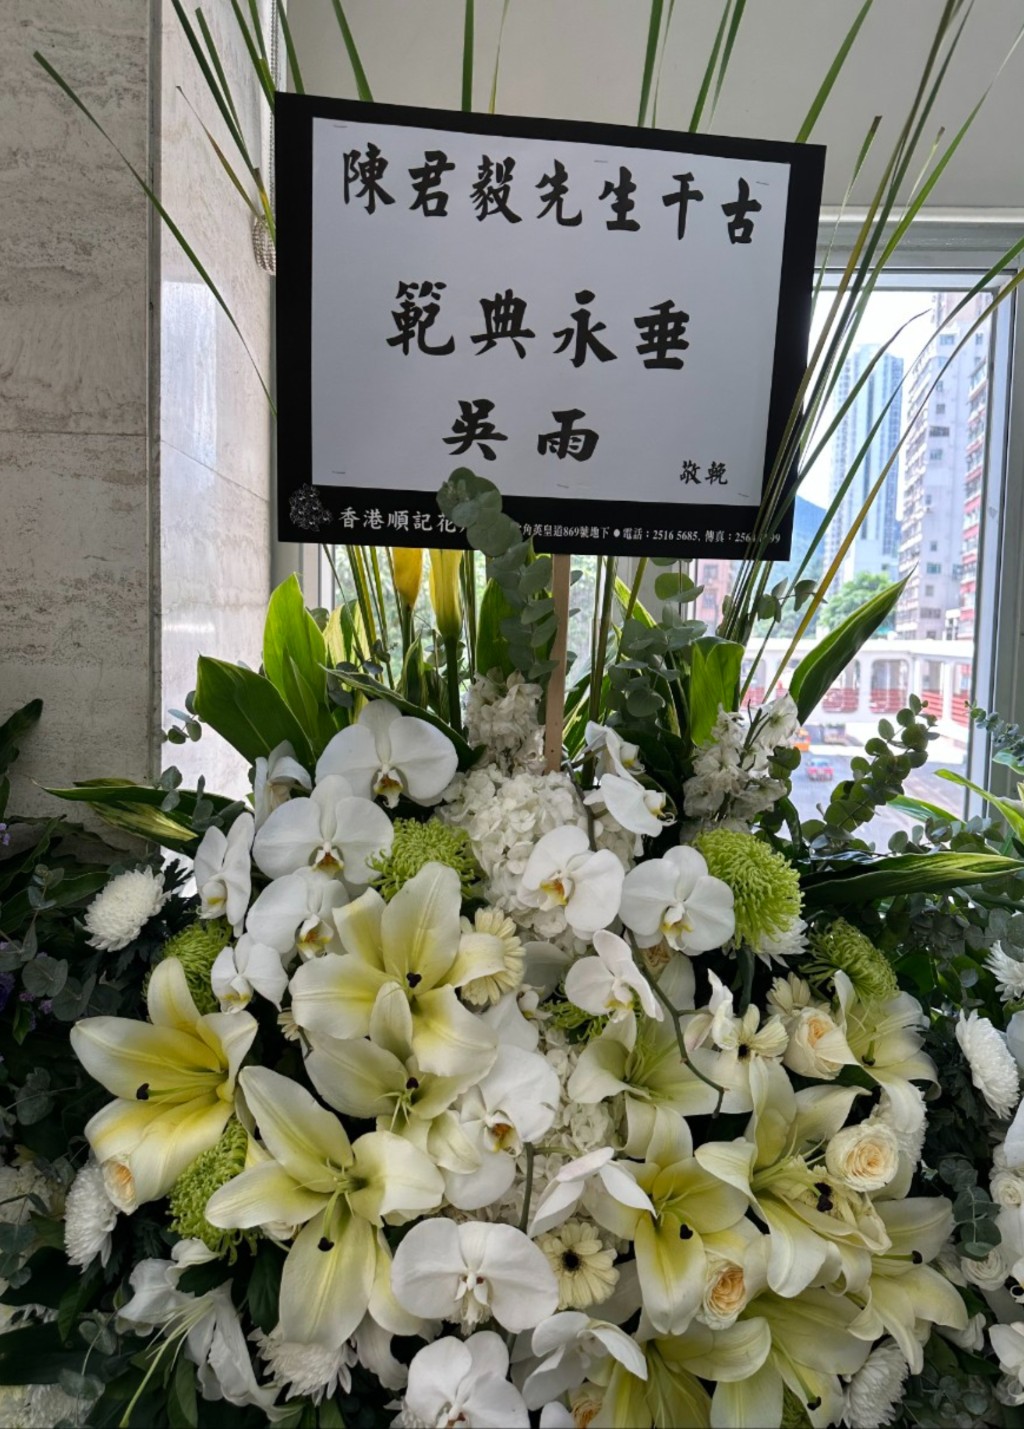 著名传媒人吴雨致送花牌。